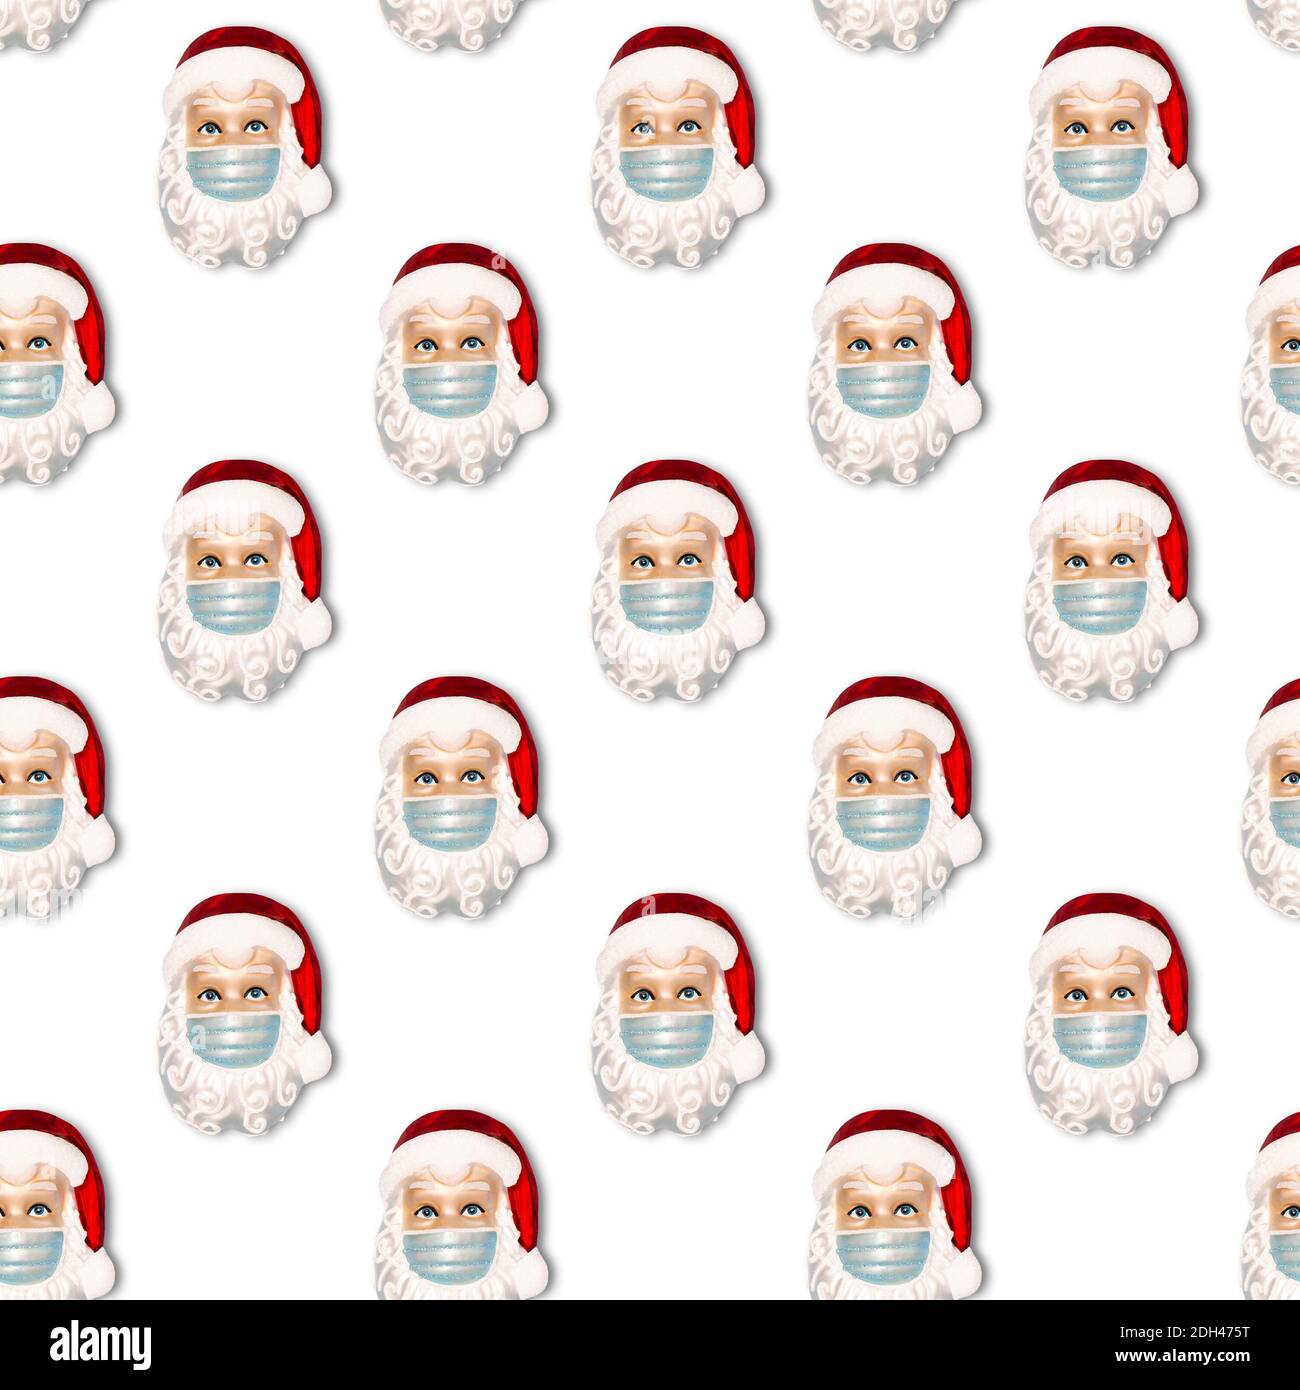 Weihnachtsschmuck Weihnachtsmann trägt schützende Gesichtsmaske. Nahtloses Muster Stockfoto